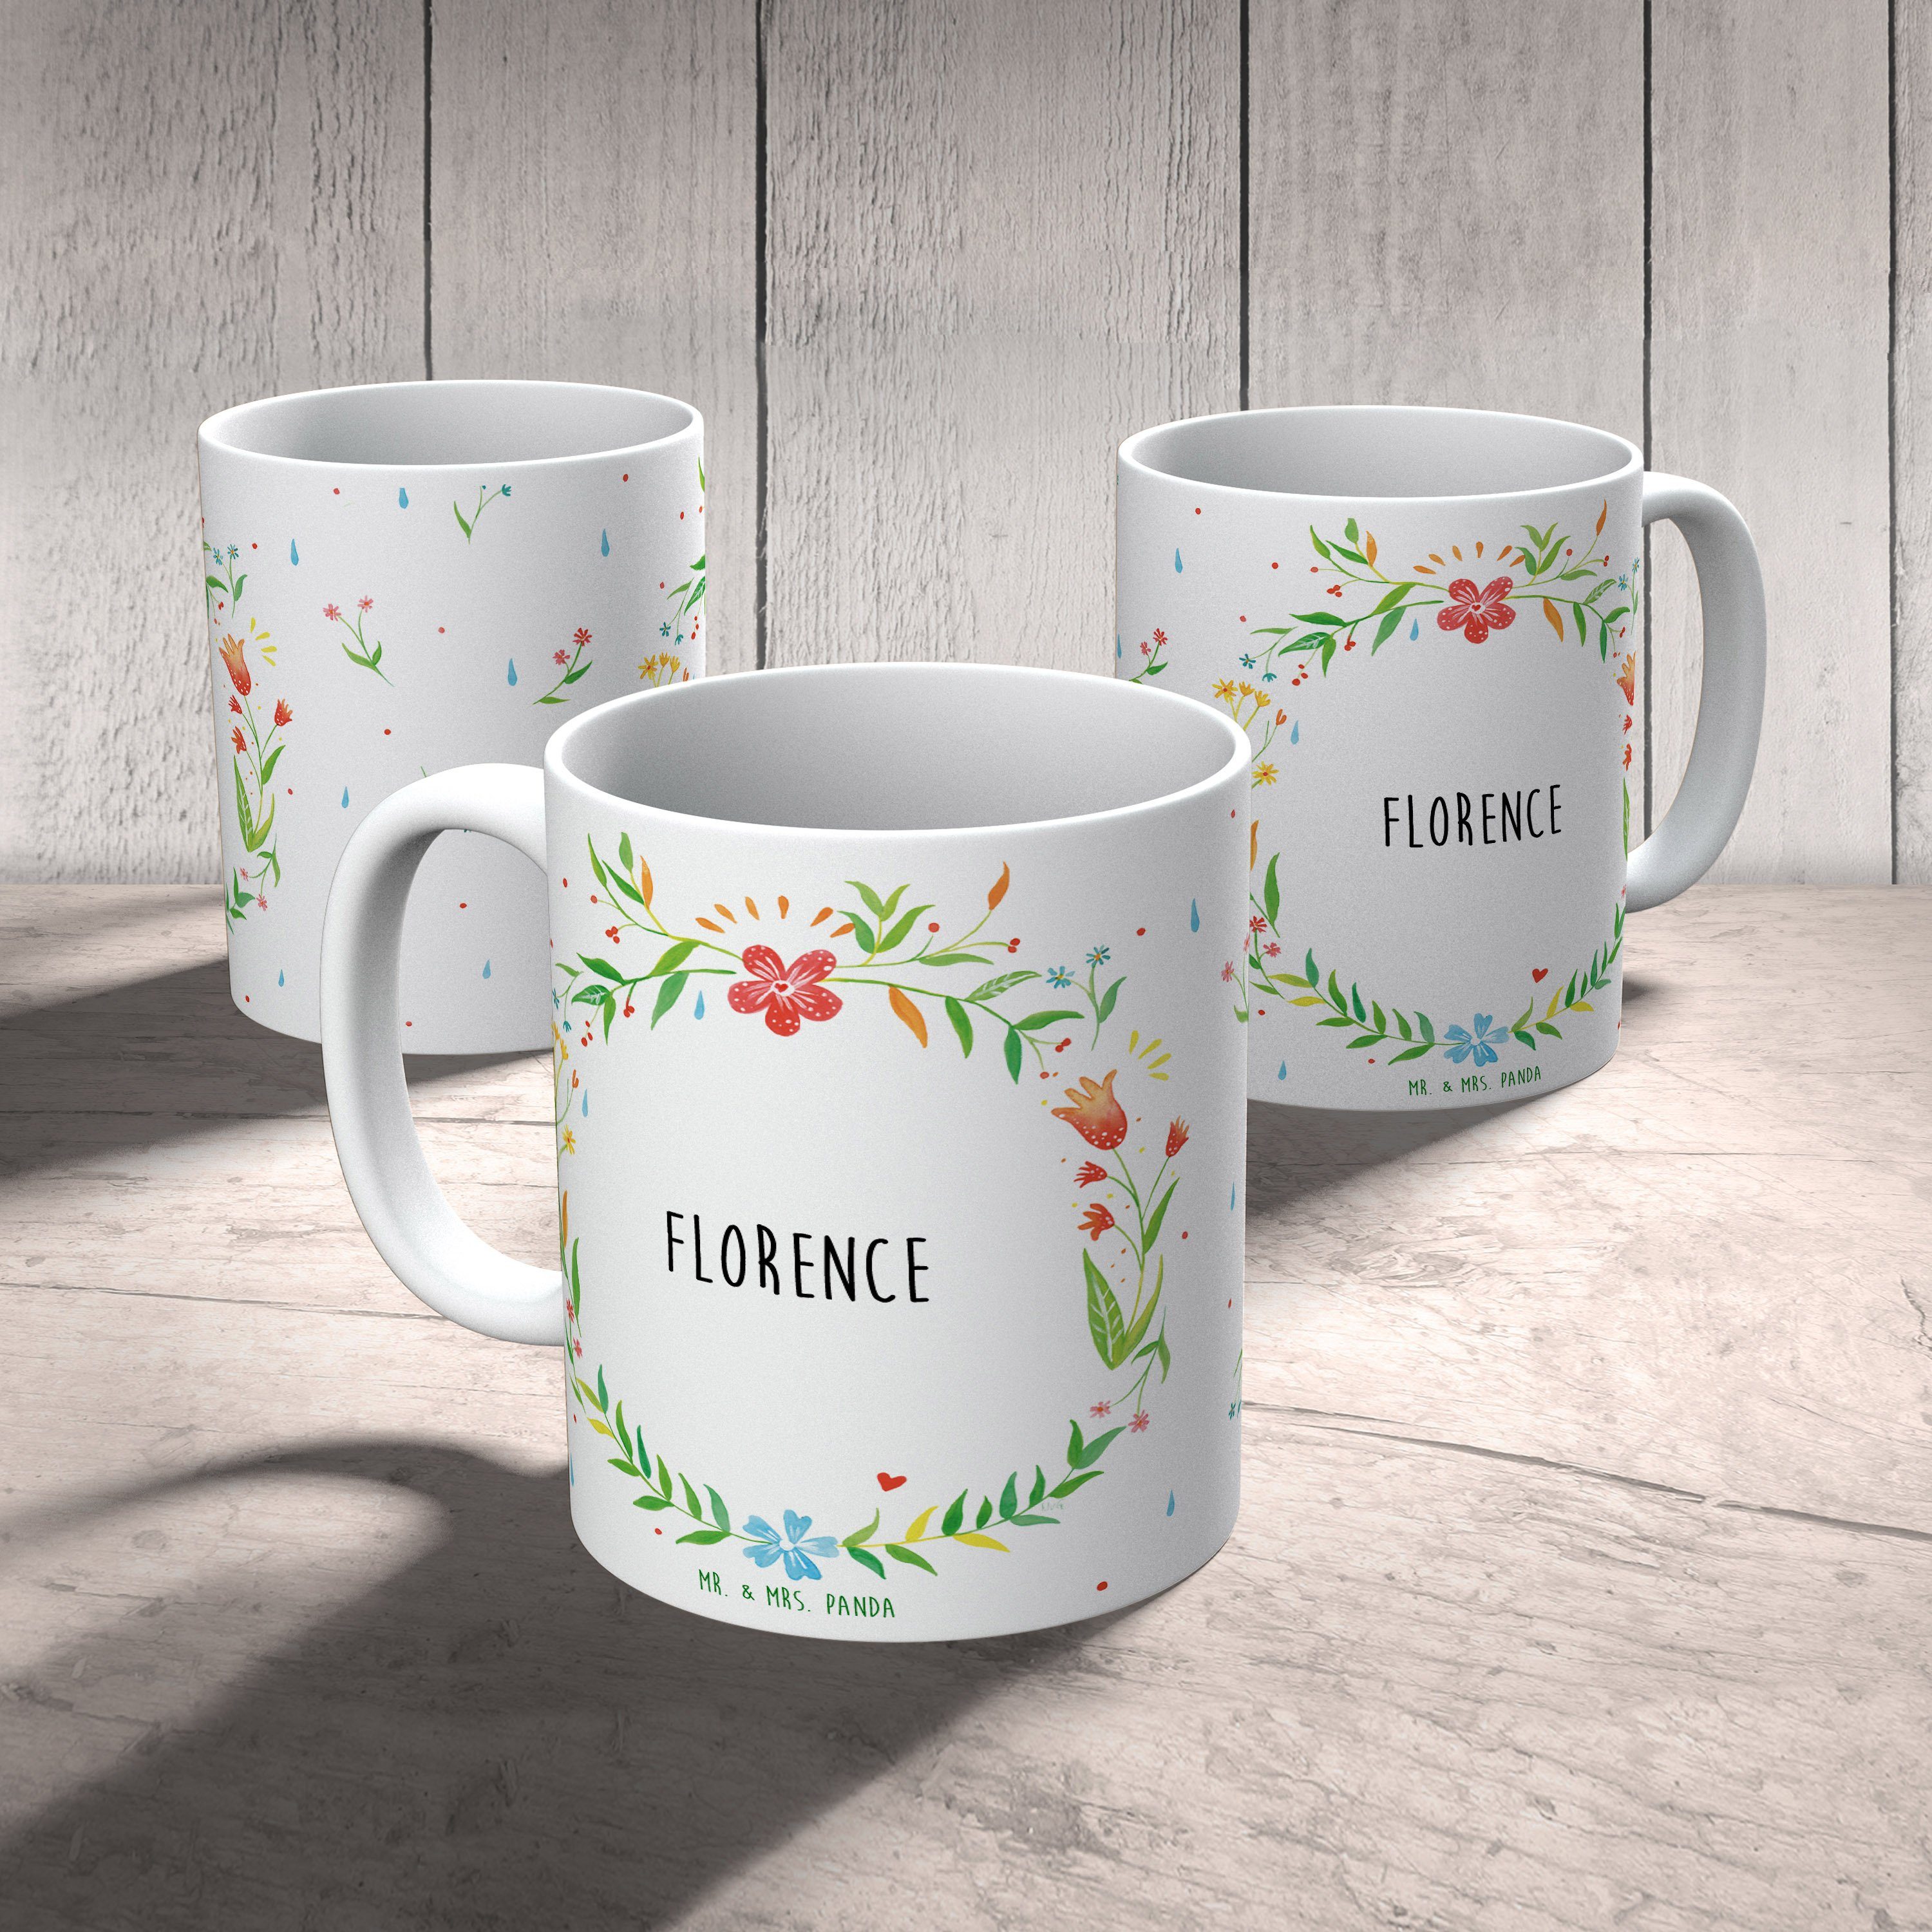 Tasse, - Mr. Geschenk, Tasse, Tasse Mrs. Panda & Florence Teebecher, Büro Geschenk Keramik Kaffeetas,